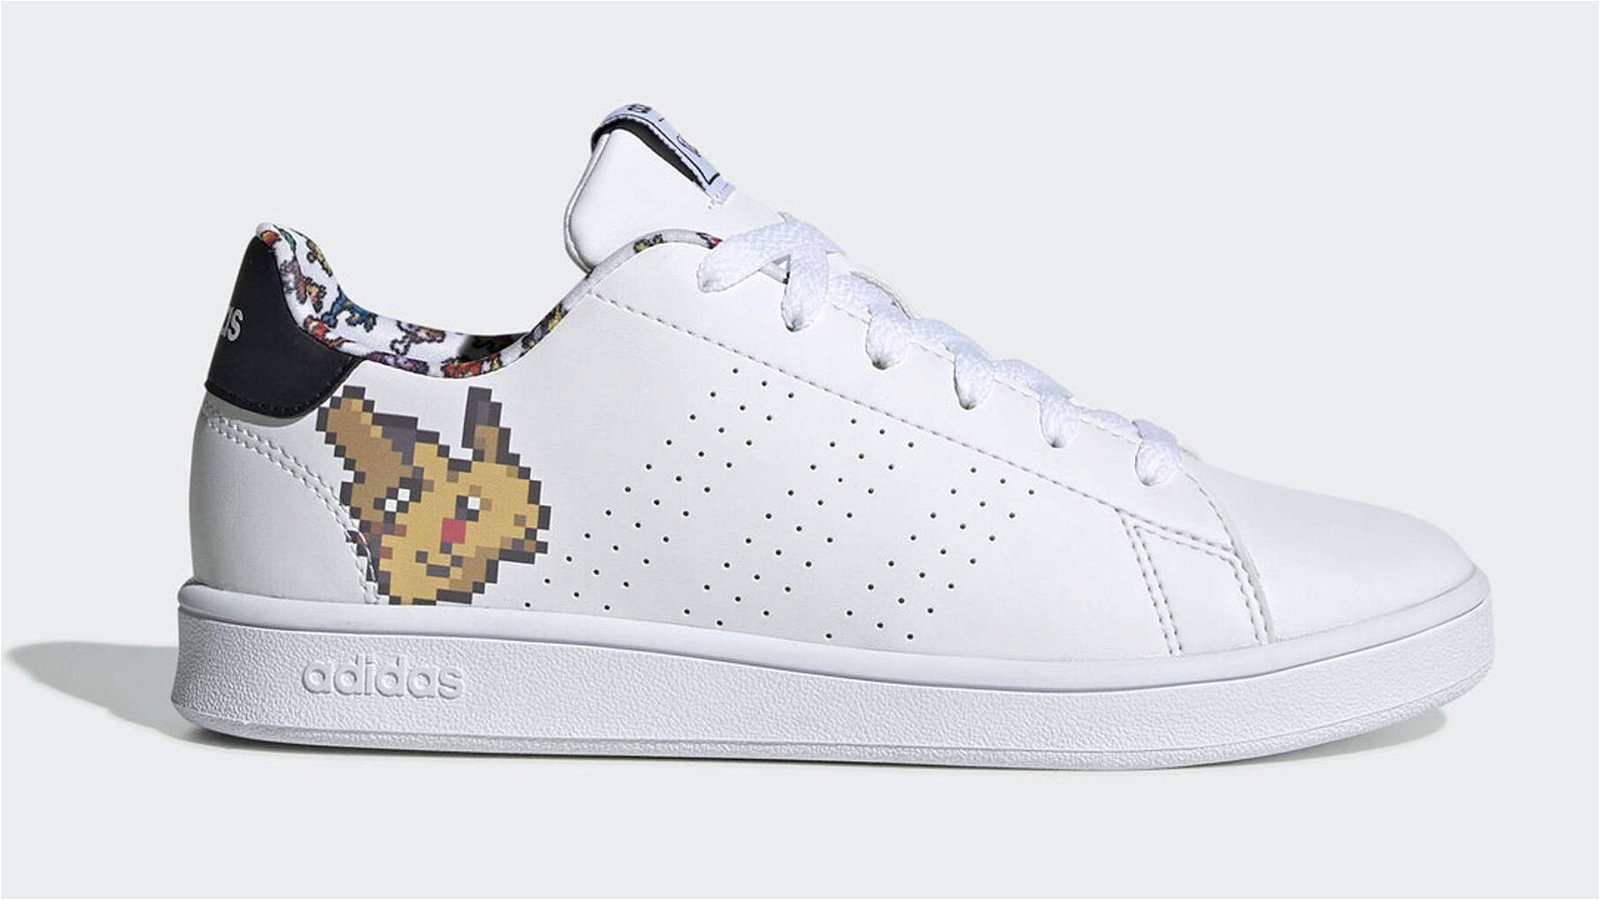 Immagine di Ecco le nuove Adidas dedicate a pikachu